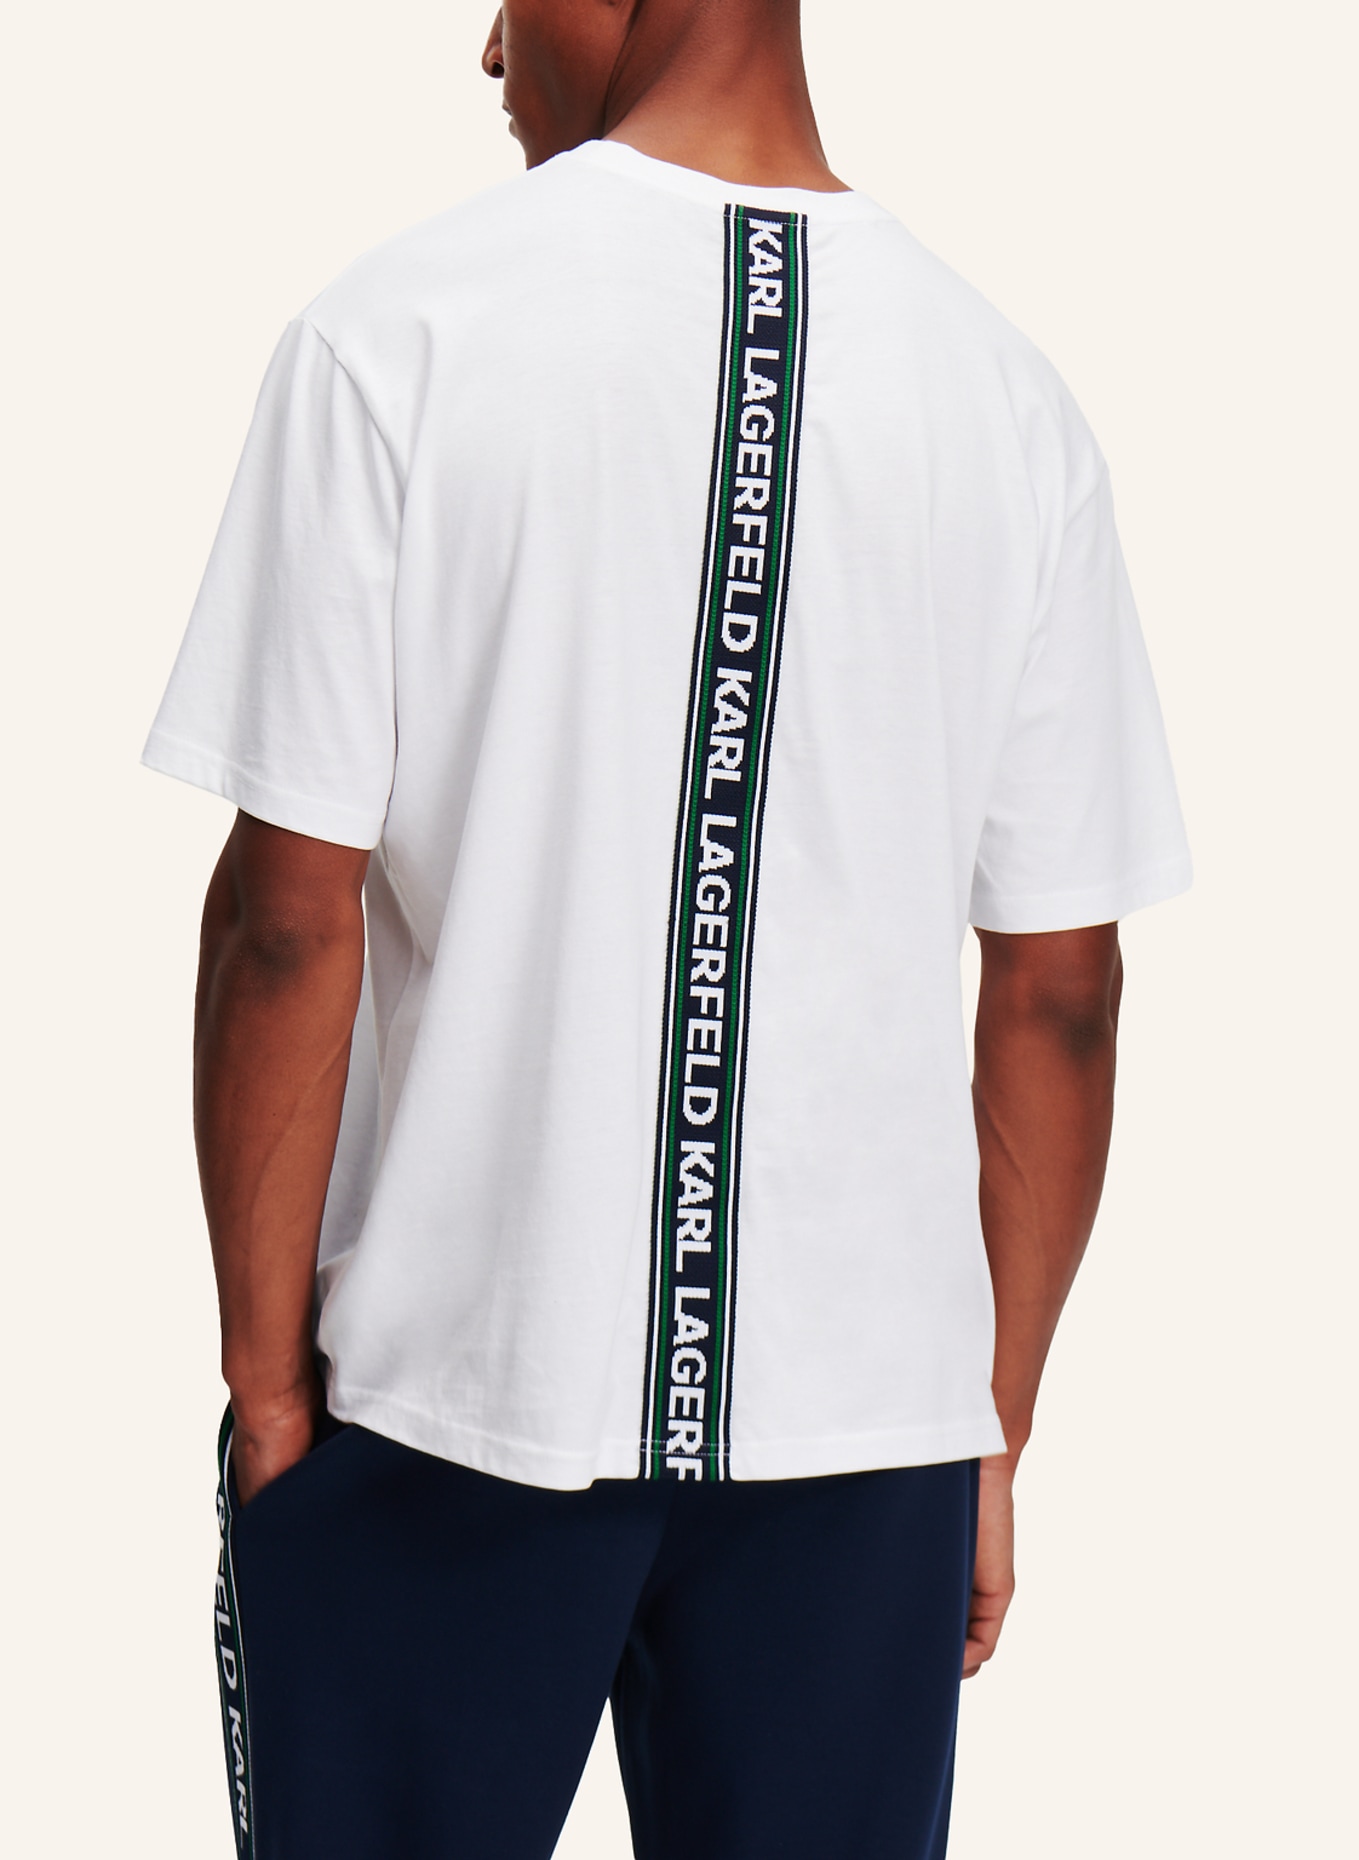 KARL LAGERFELD T-shirt, Farbe: WEISS (Bild 2)